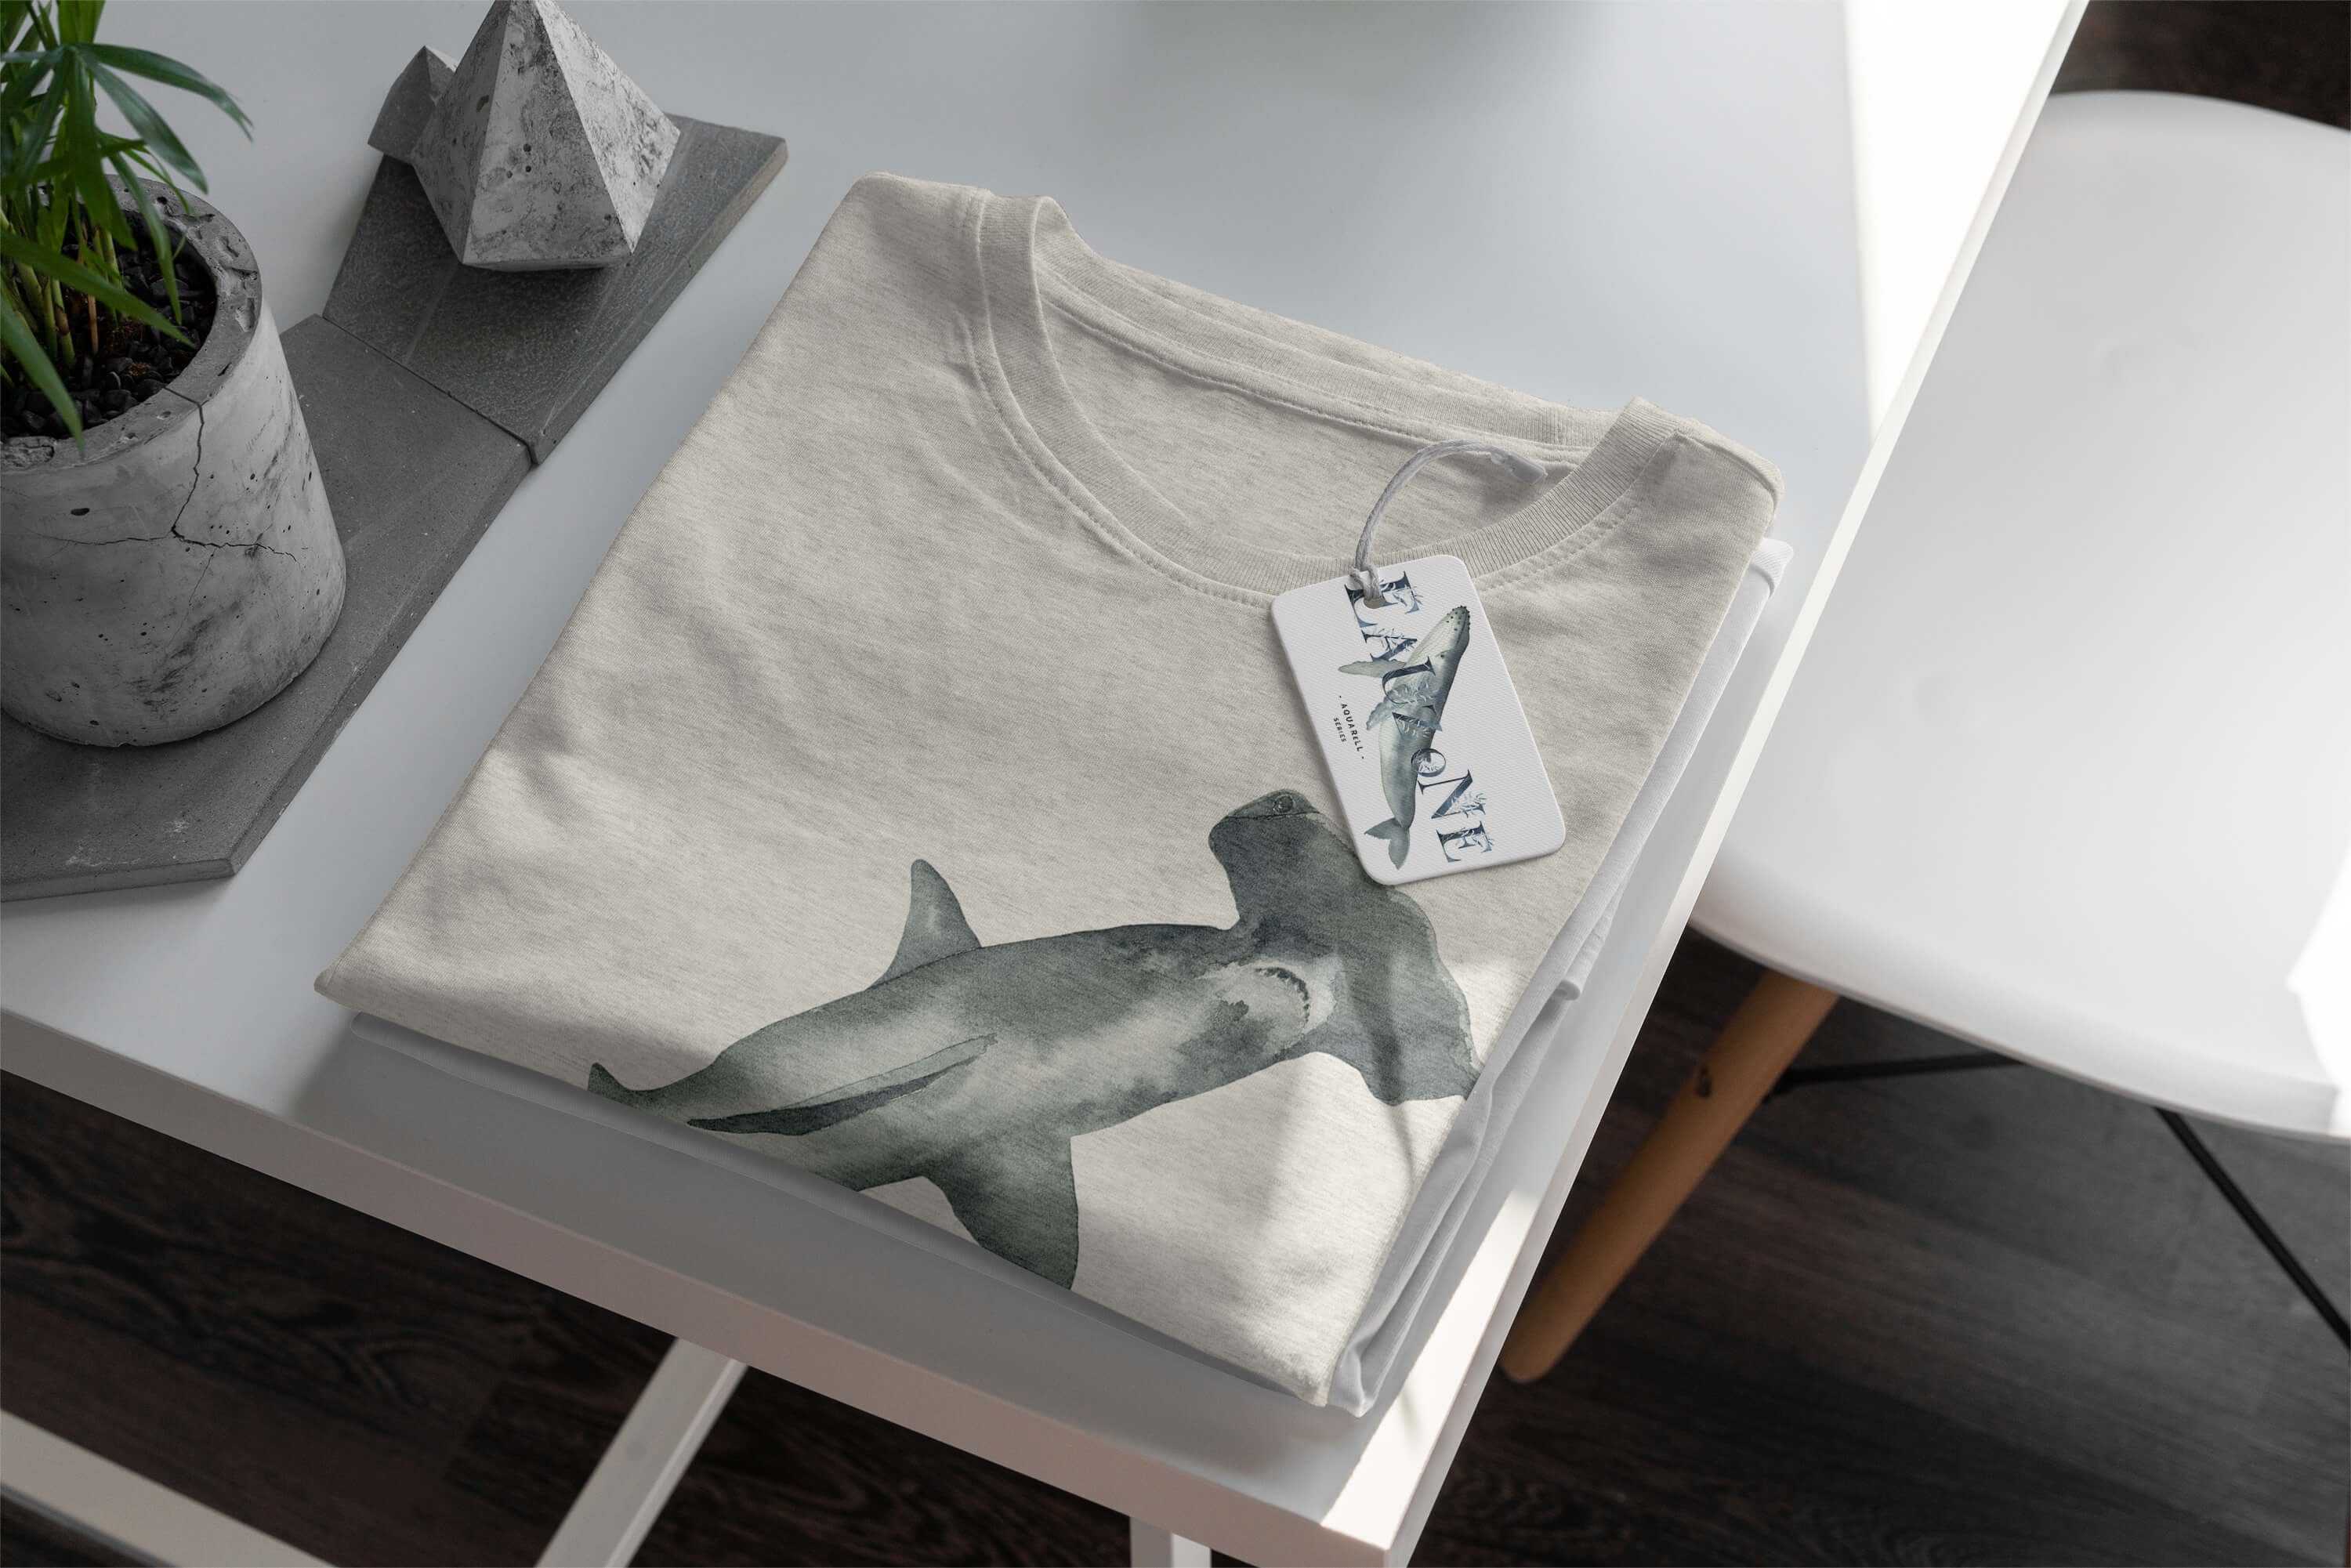 Shirt Nachhaltig Sinus Art Ökomode (1-tlg) Motiv gekämmte Hammerhai Herren T-Shirt 100% Wasserfarben T-Shirt au Bio-Baumwolle